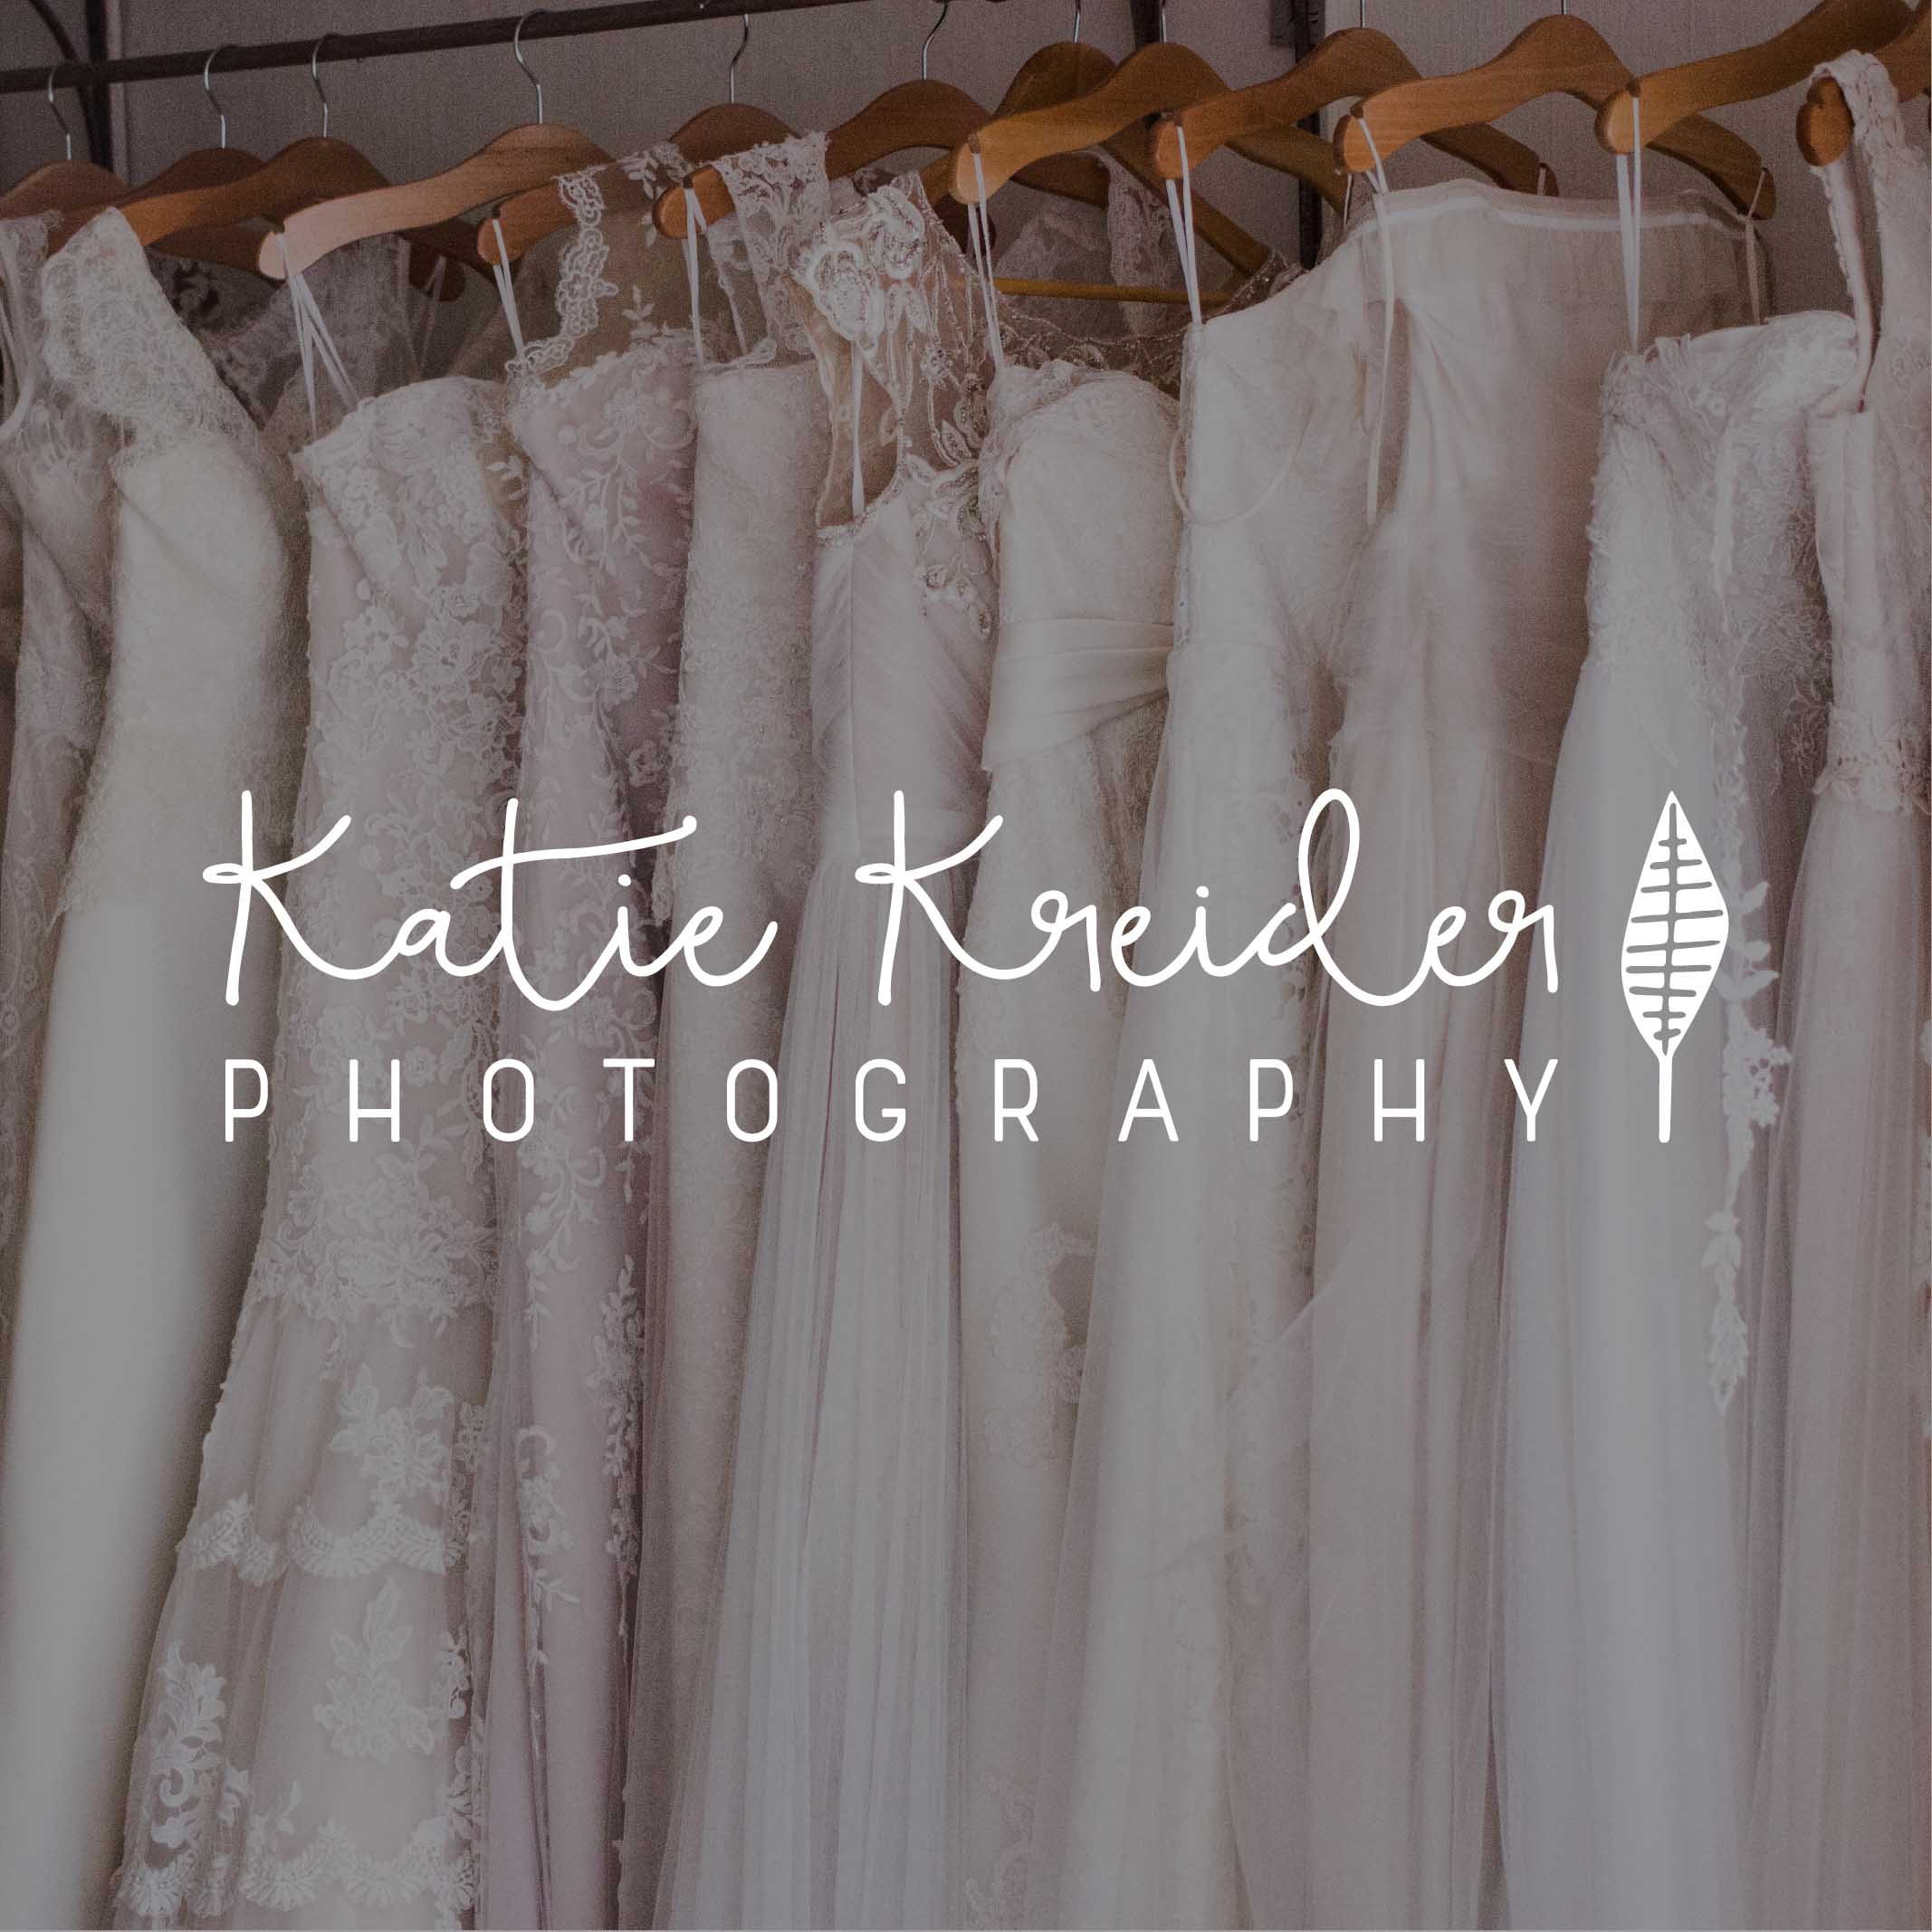 Katie Kreider Photography